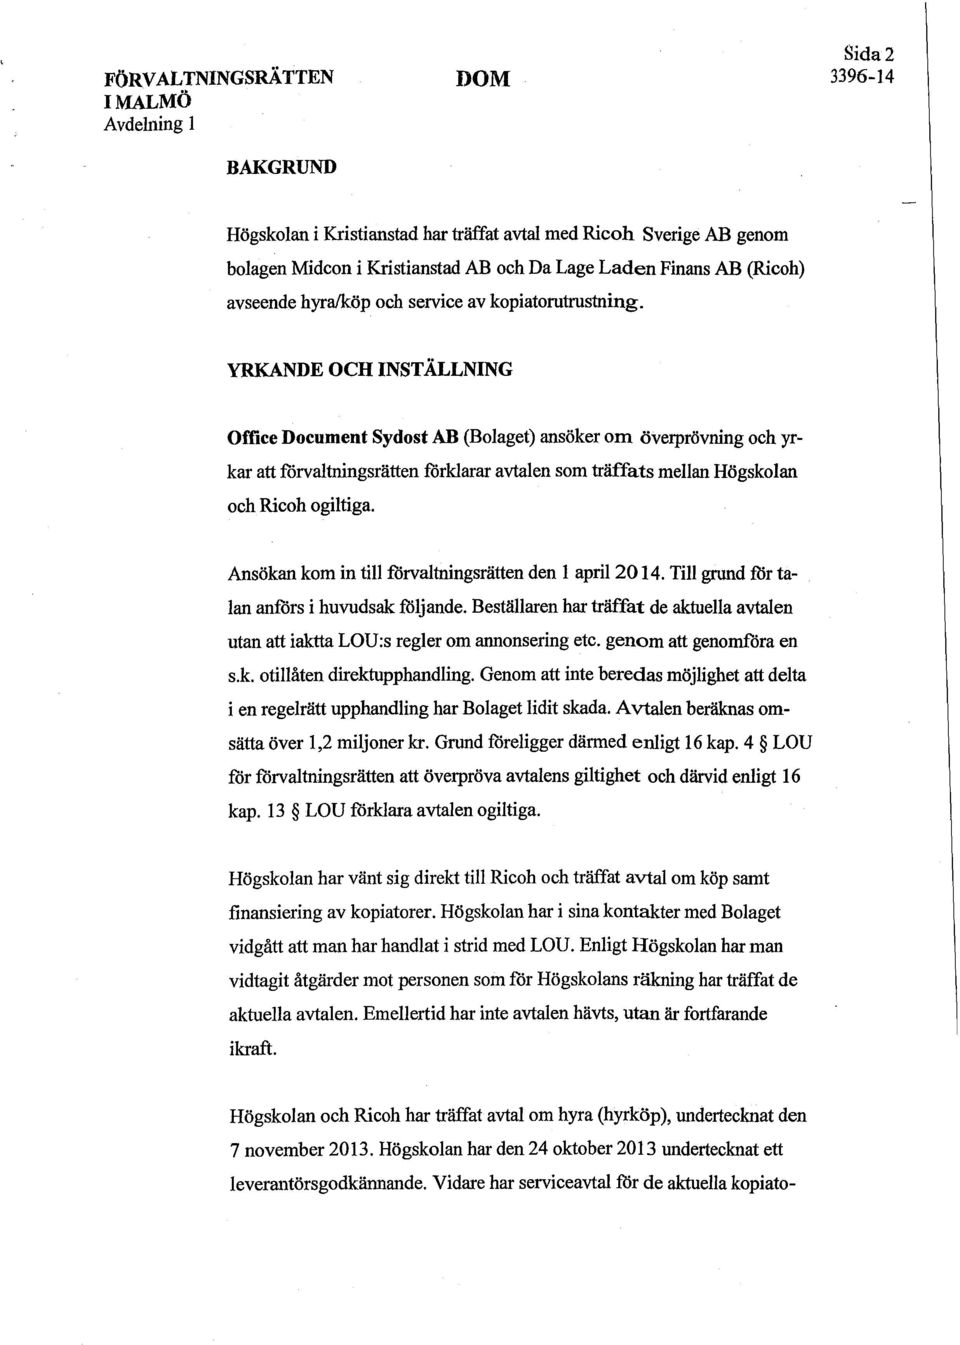 YRKANDE OCH INSTÄLLNING Office Document Sydost AB (Bolaget) ansöker om överprövning och yrkar att förvaltningsrätten förklarar avtalen som träffats mellan Högskolan och Ricoh ogiltiga.